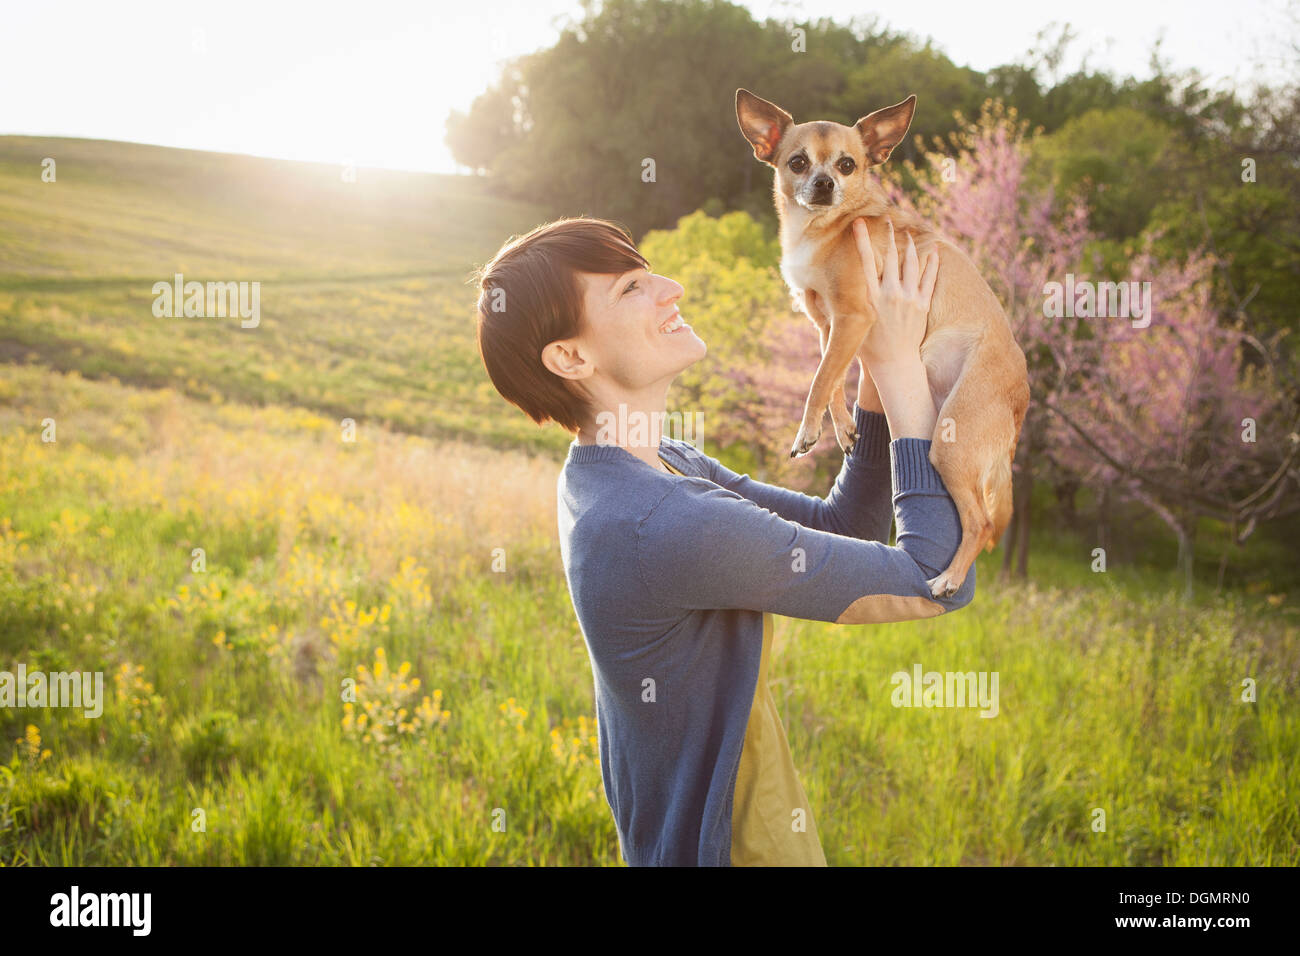 Une jeune femme dans les champs au printemps. Tenant un petit chihuahua chien dans ses bras. Un animal de compagnie. Banque D'Images